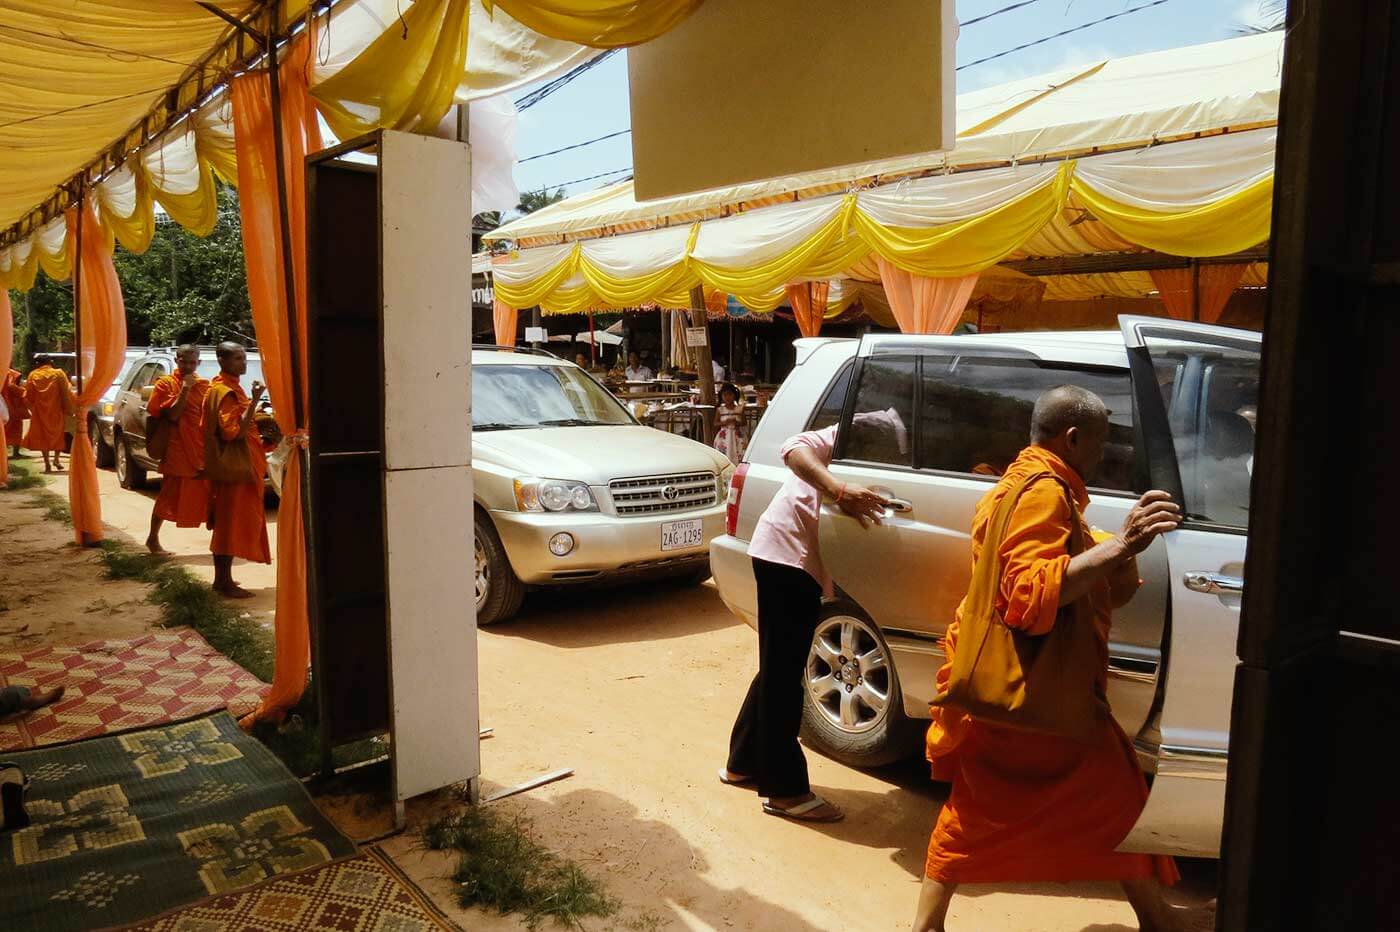 Mönche steigen wieder in Autos, nachdem sie auf einer Feier ihren Segen gegeben haben